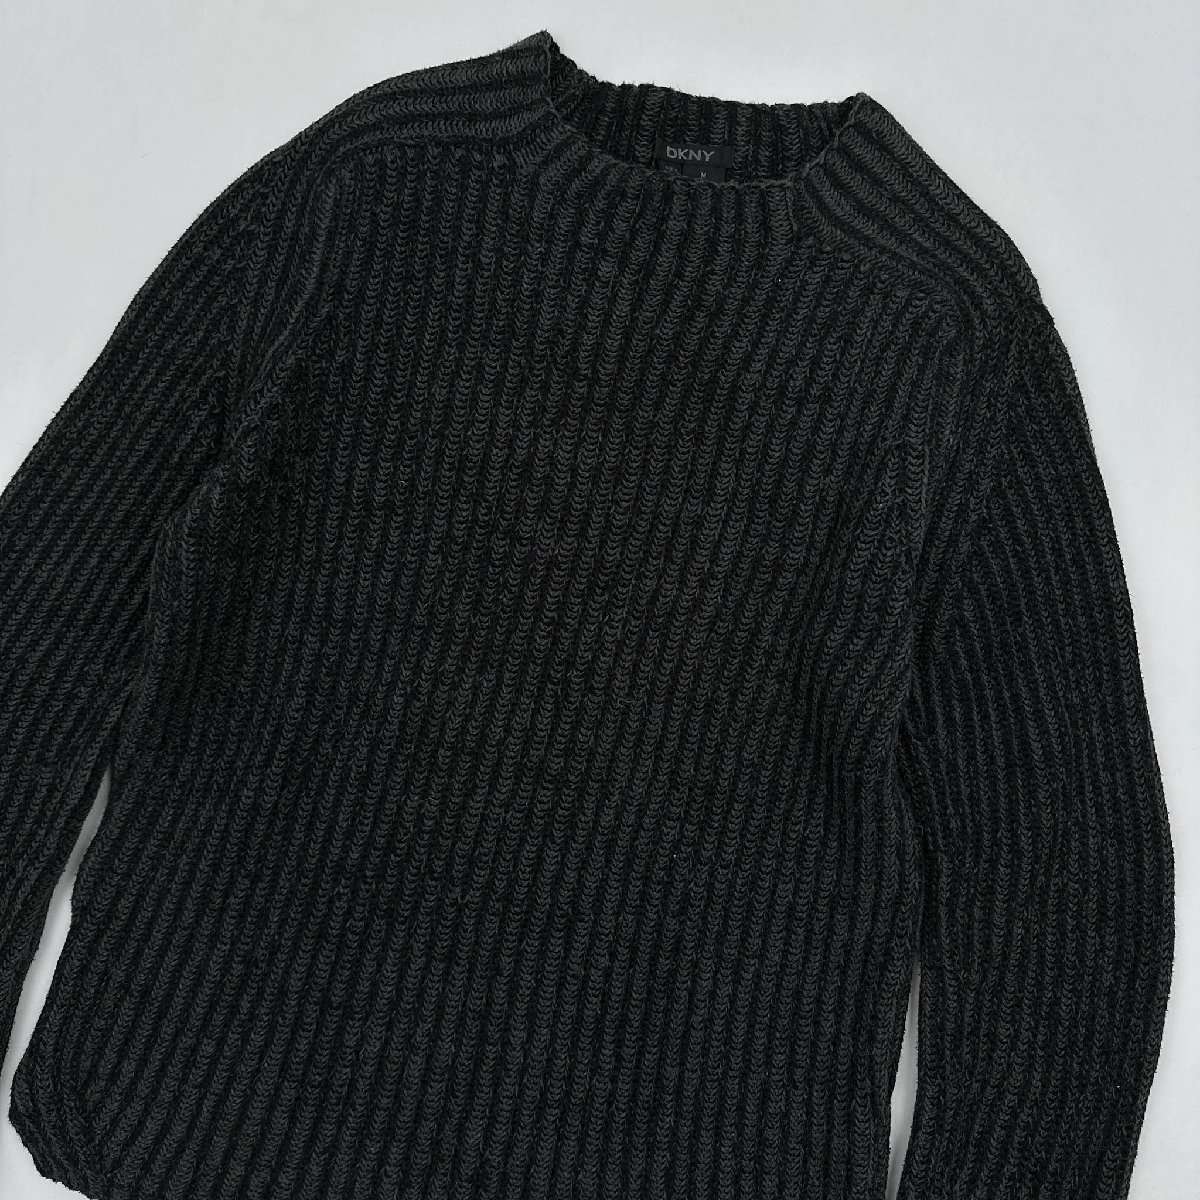 DKNY オールド ダナキャラン デザイン コットンニット セーター サイズ M/ブラック ダークグレー/ビンテージ_画像2